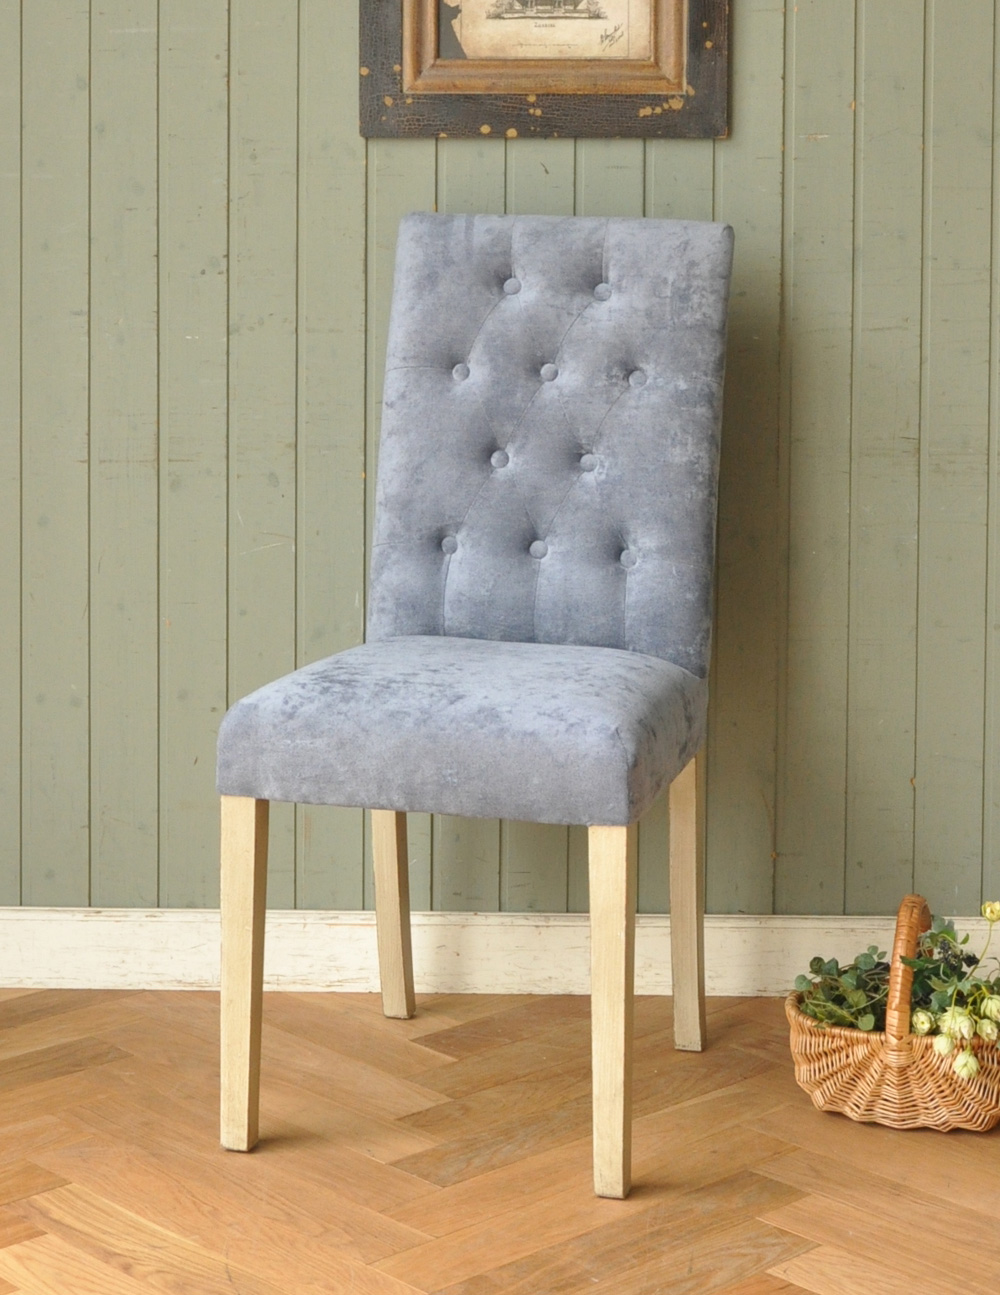 フレンチスタイルのおしゃれなダイニングチェア、アンティーク風のベイビーブルー色の椅子 (y-121-c)